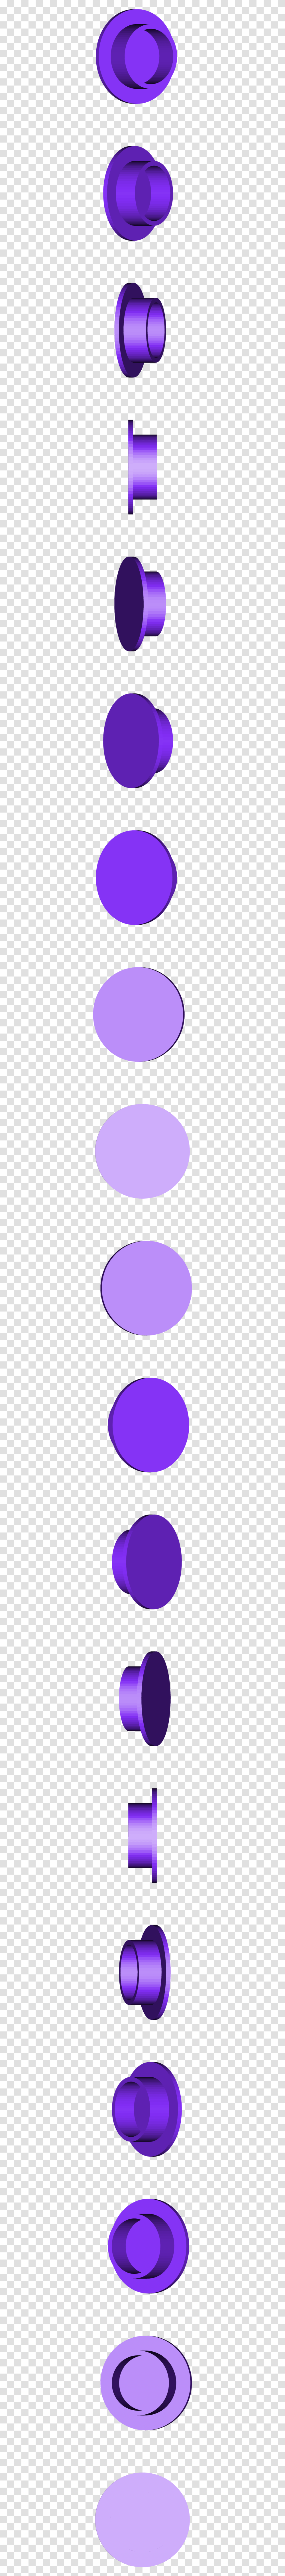 Circle, Sphere, Texture, Purple, Light Transparent Png